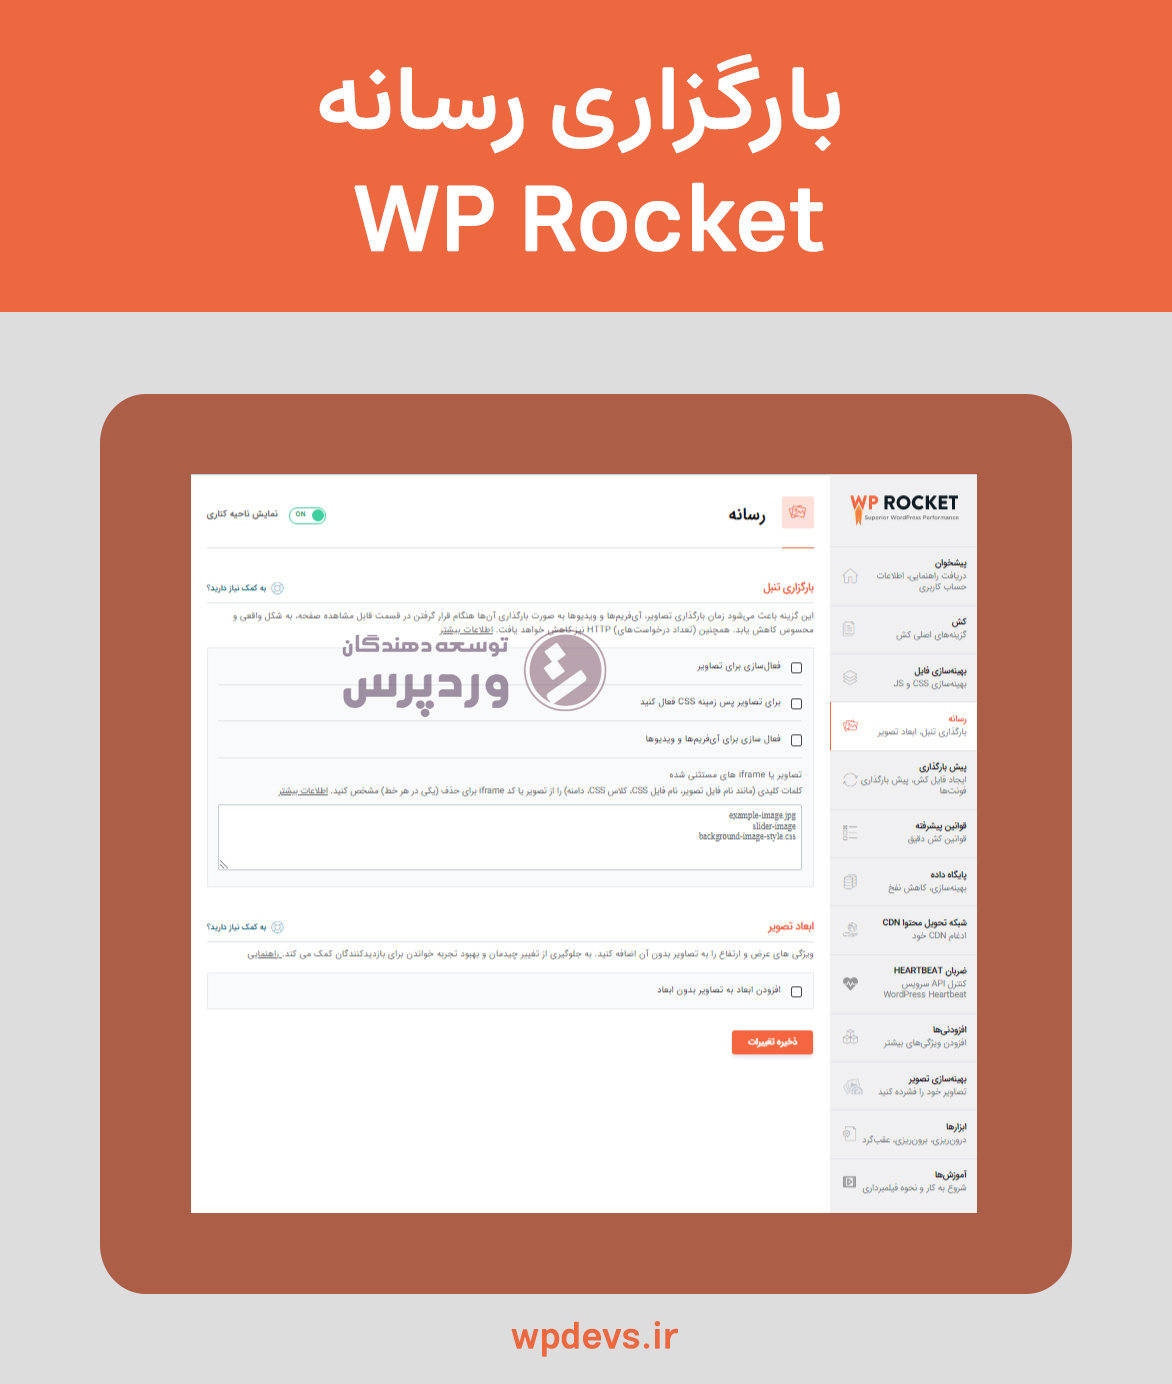 افزونه بهینه سازی و افزایش سرعت سایت wp rocket بارگزاری رسانه